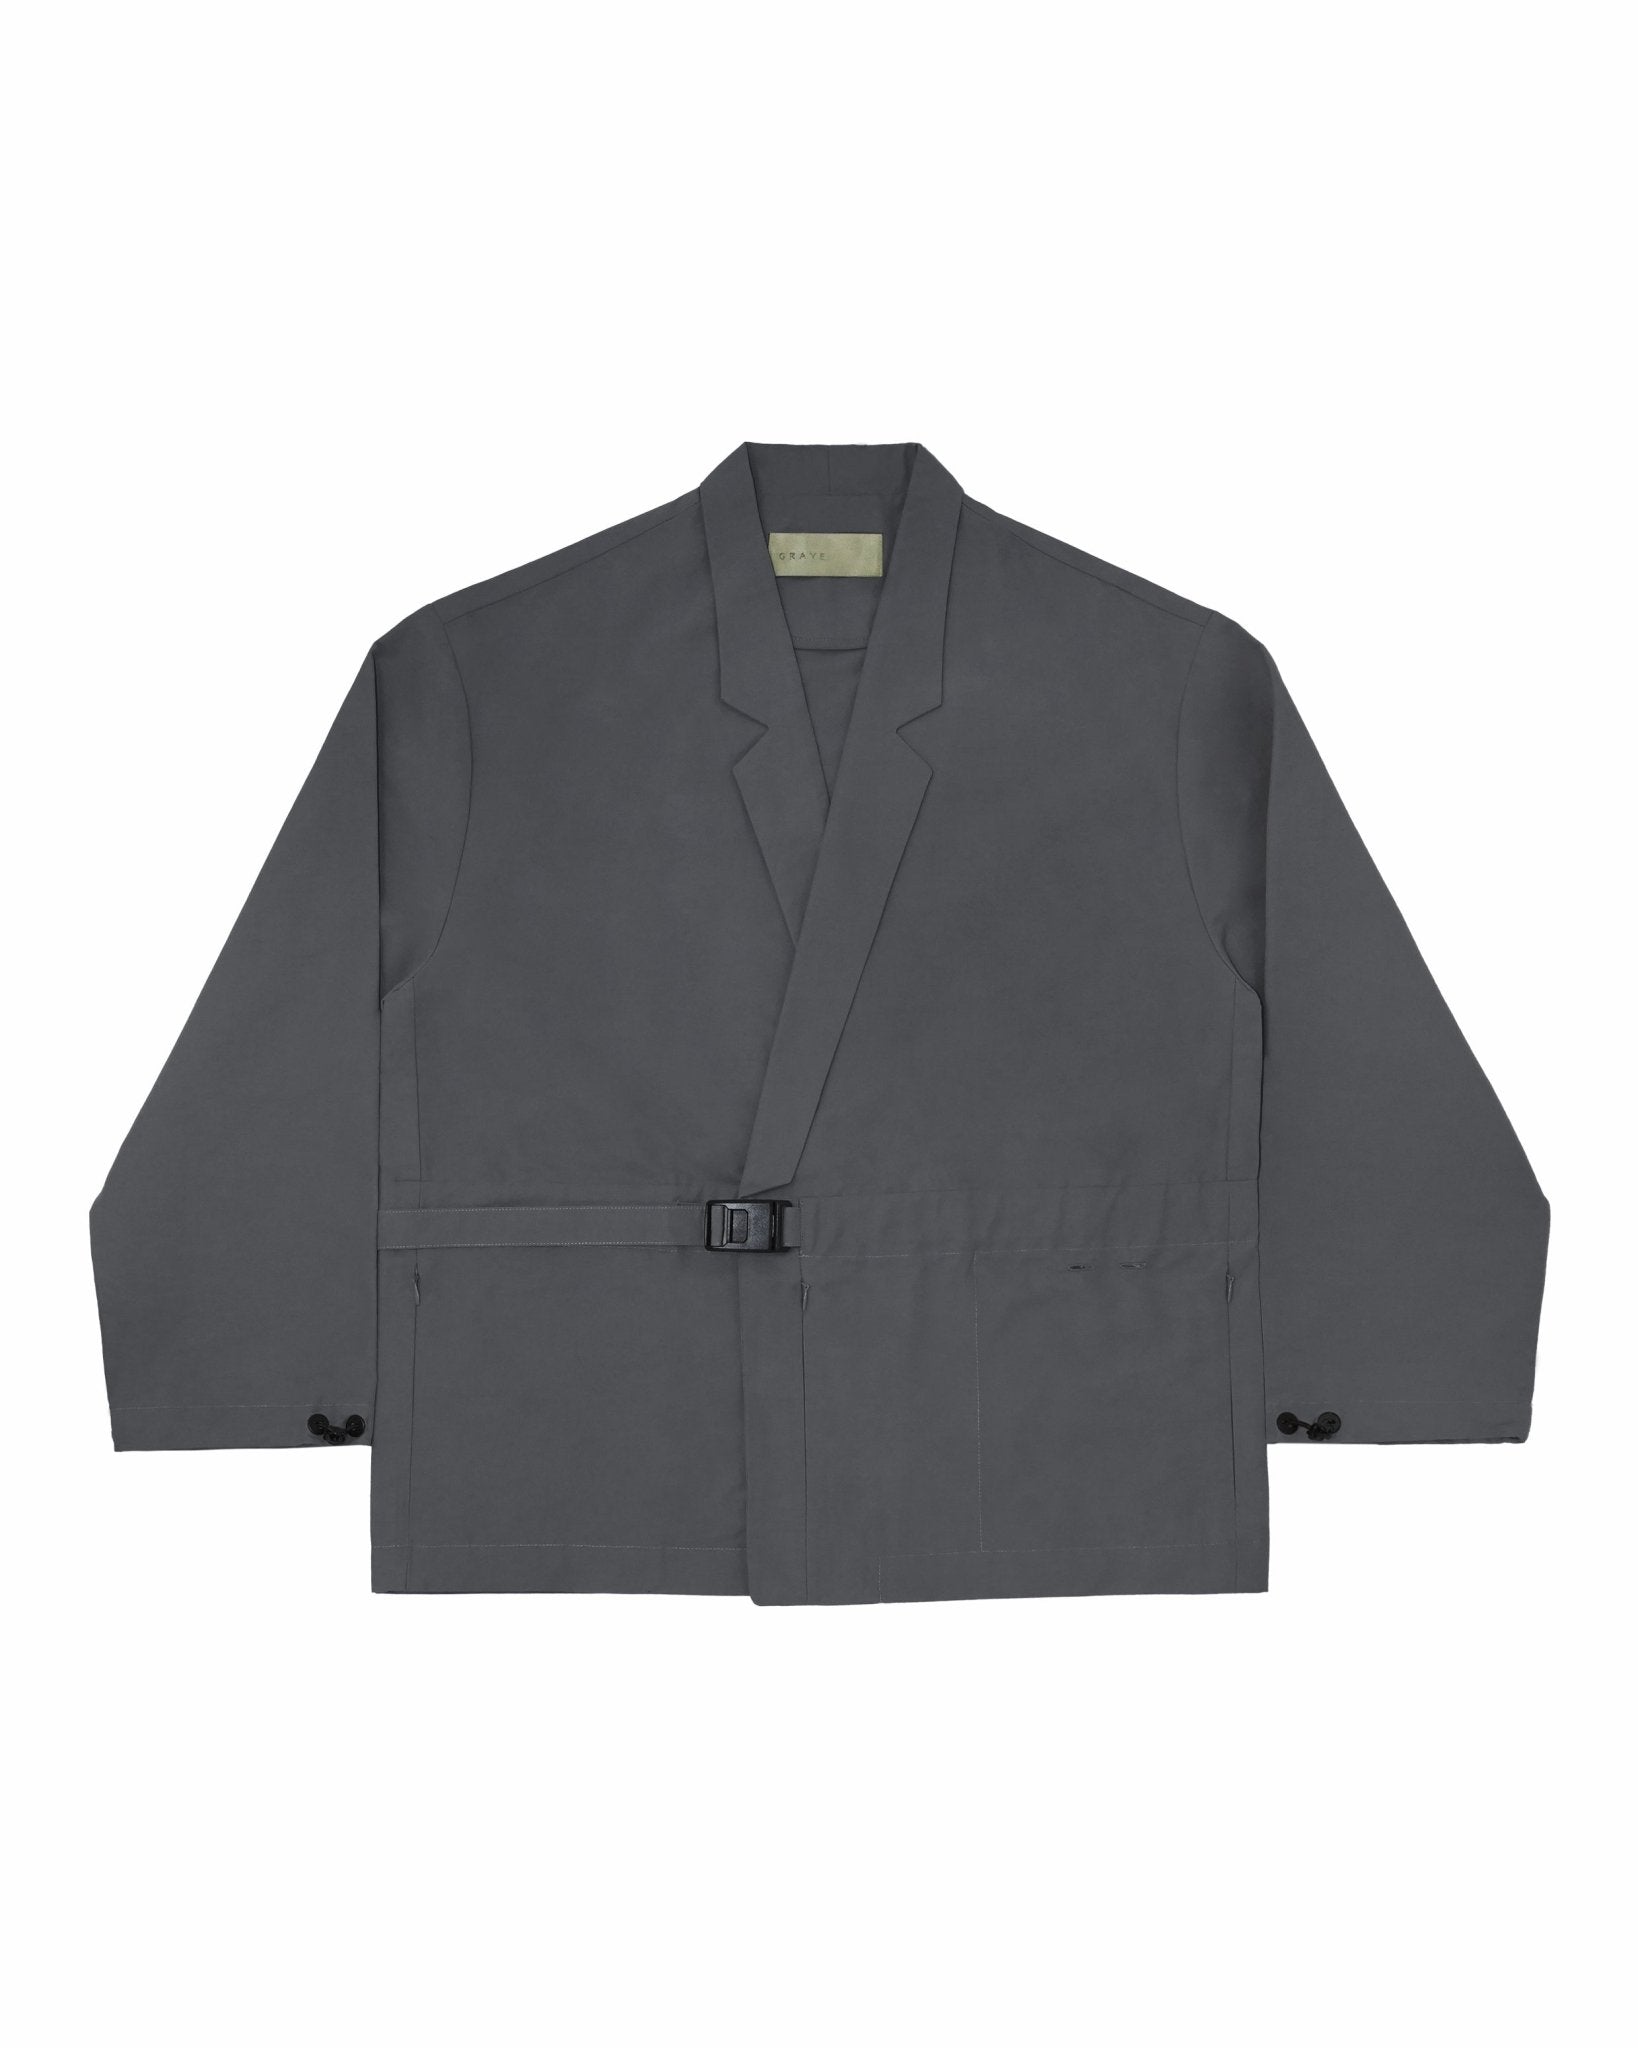 Kimono Buckle Jacket - Graphite - G R A Y E